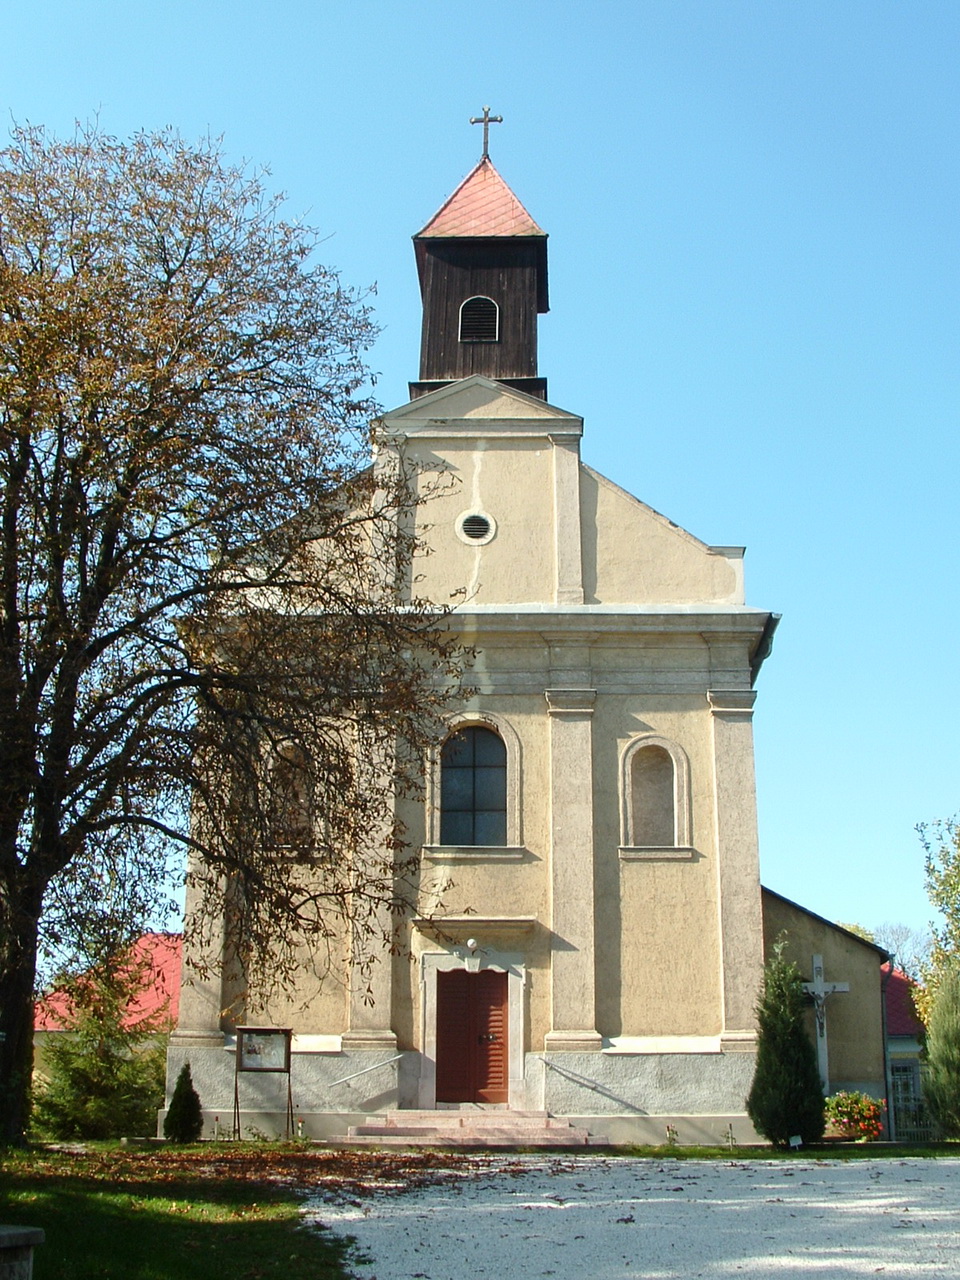 The pilgrimage church of Péliföldszentkereszt